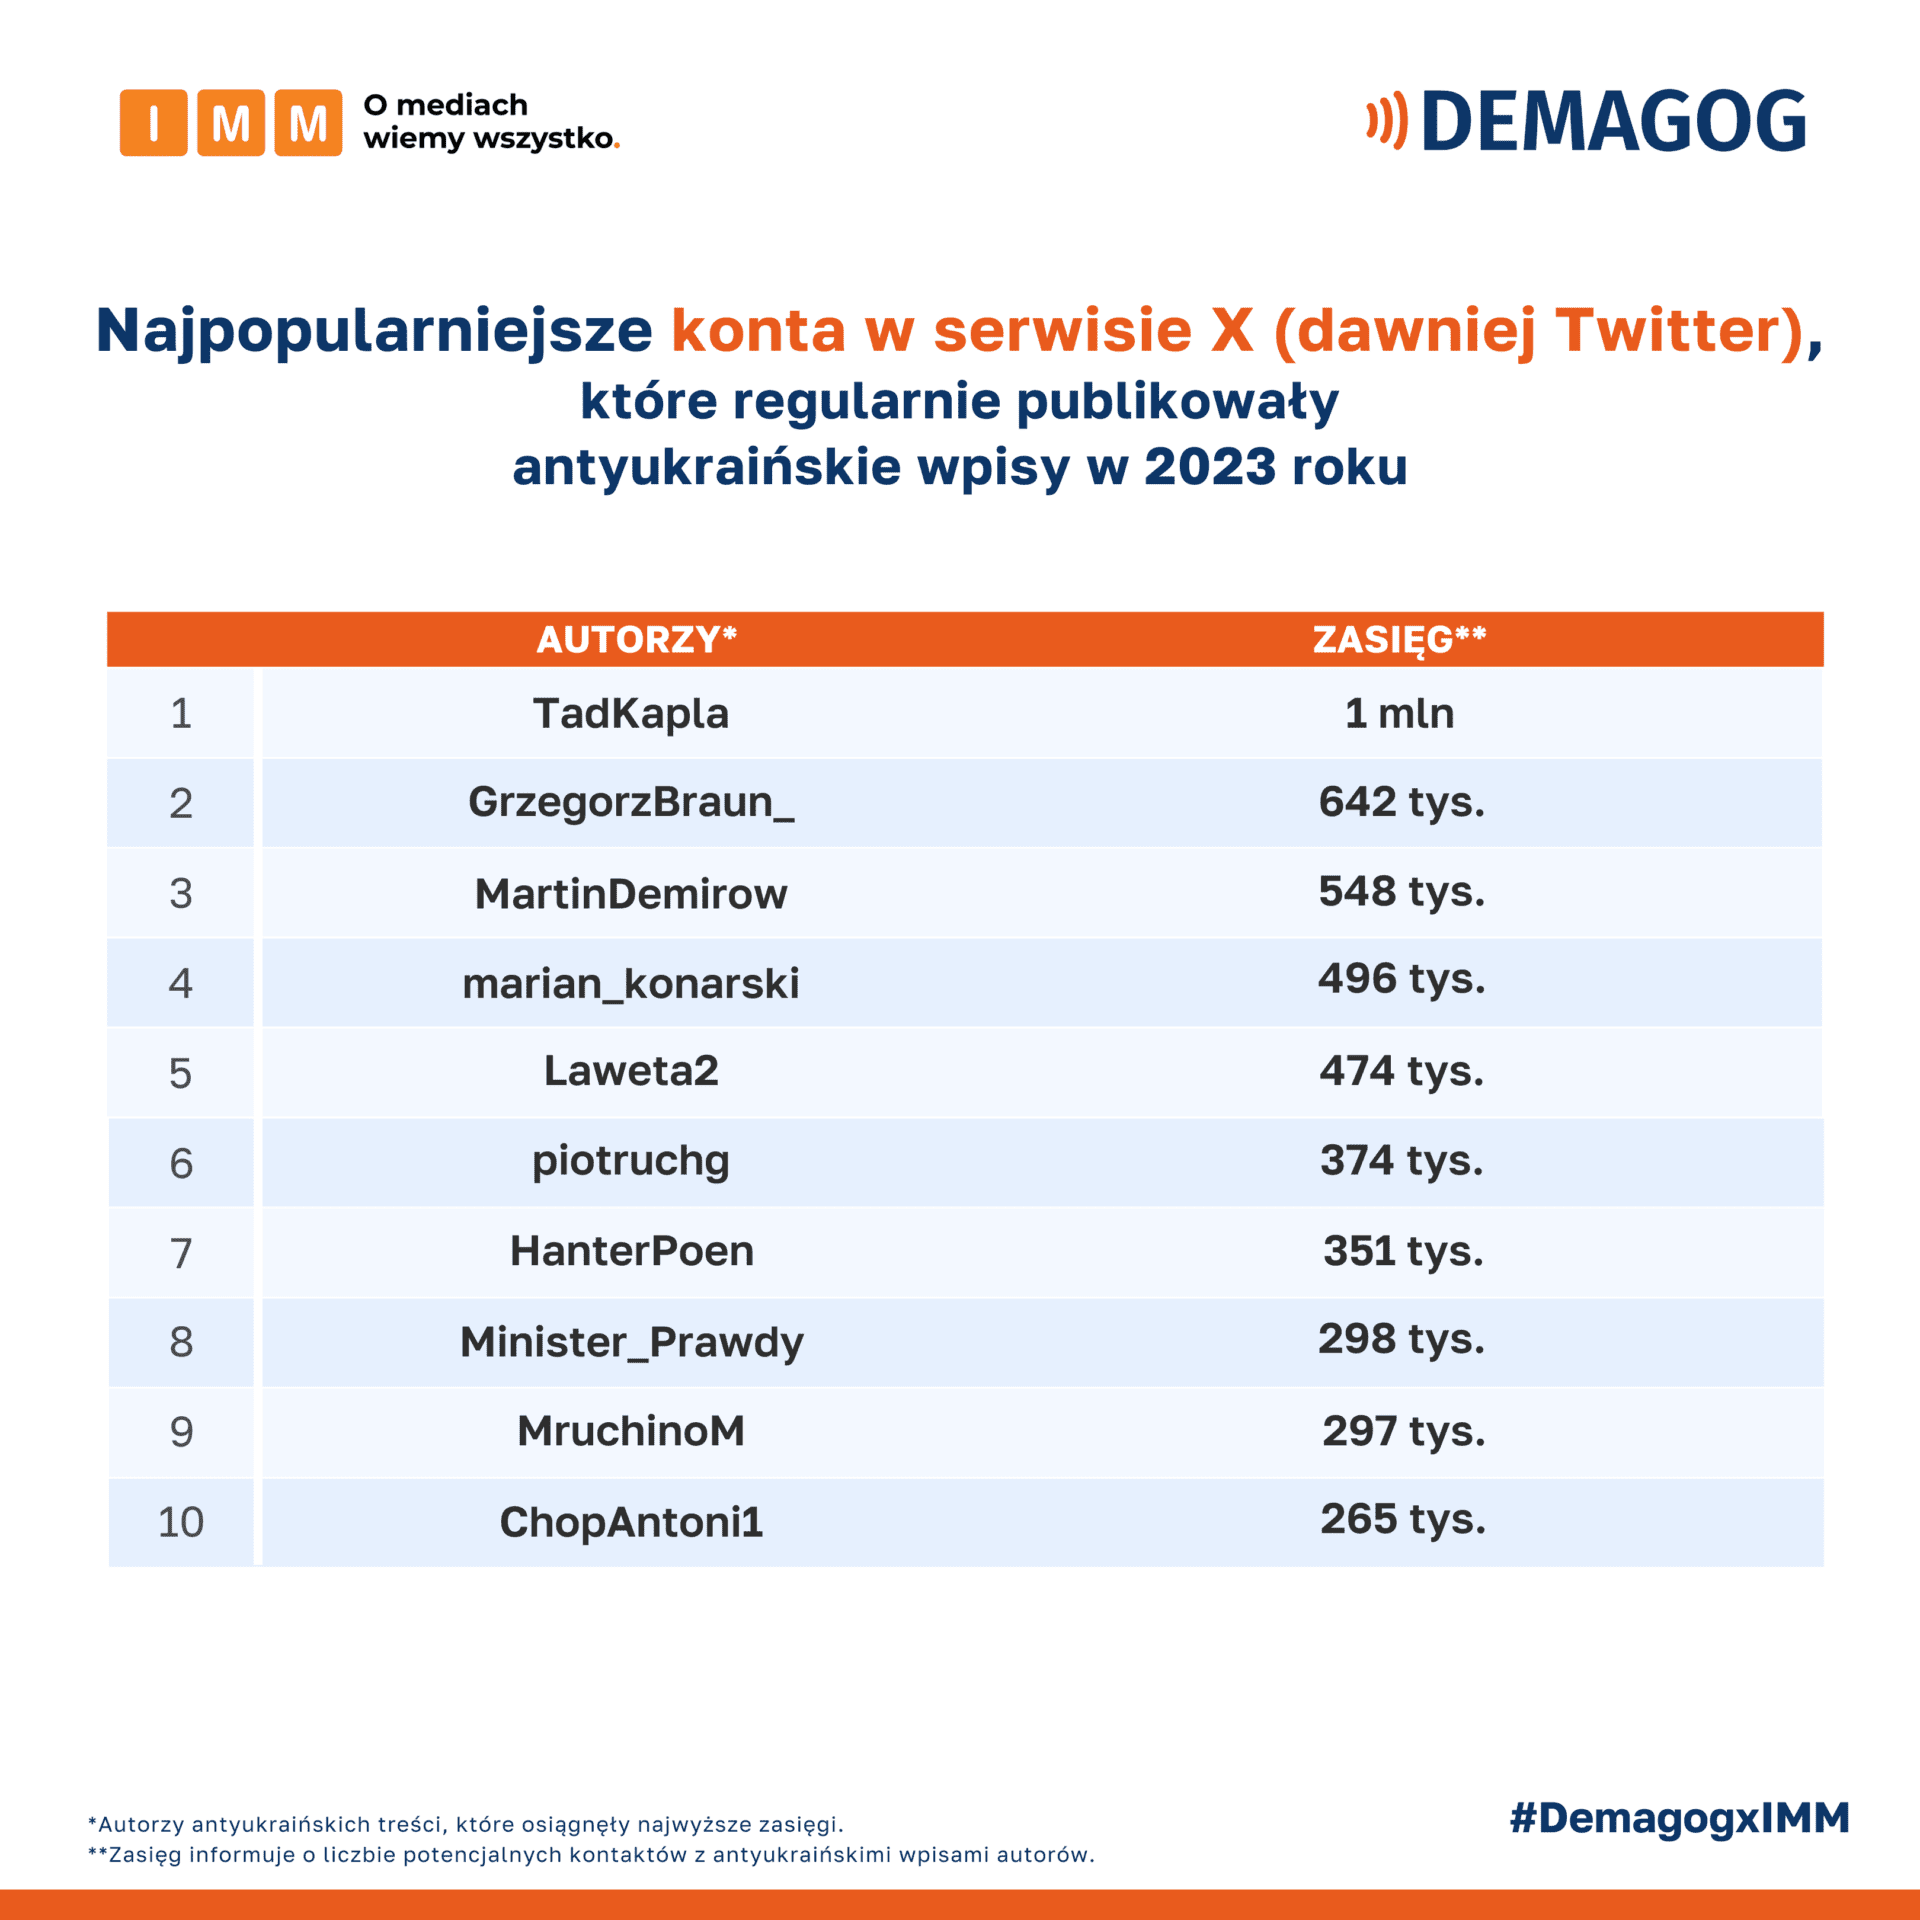 Zestawienie najpopularniejszych kont na Twitterze (obecnie serwis X) powielających antyukraińską propagandę